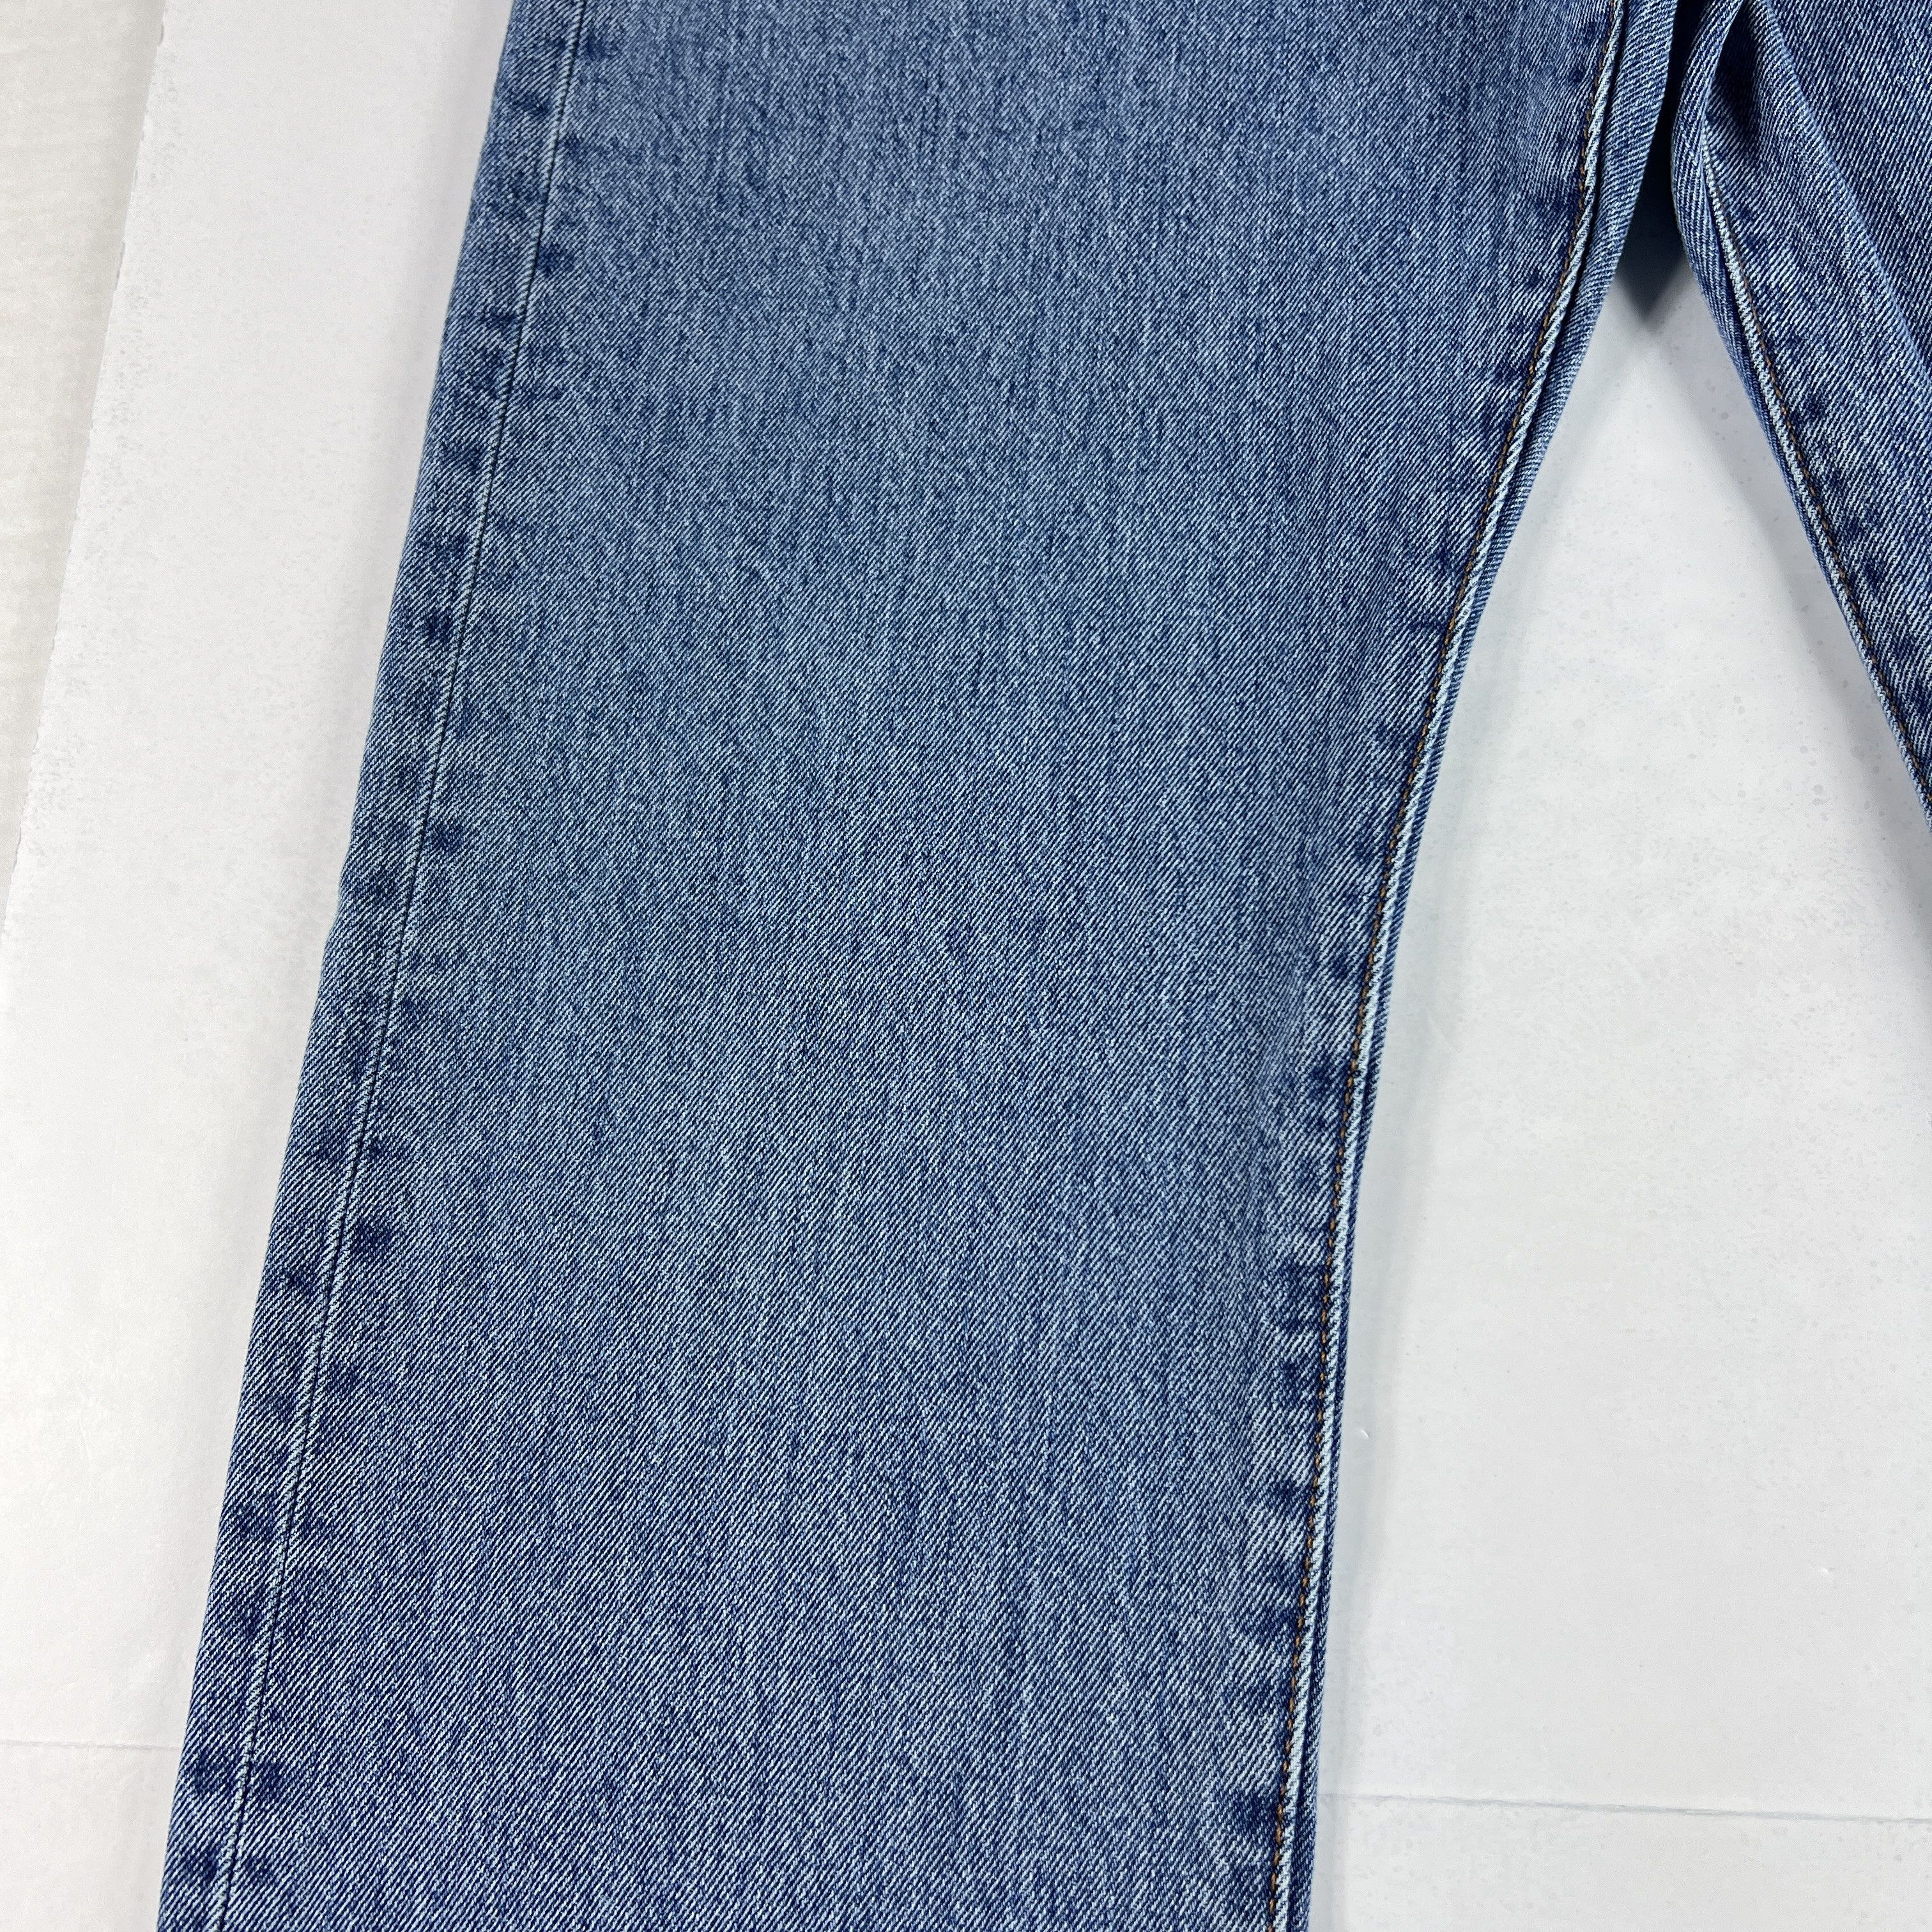 Levi's Levi's Jeans 501 XX Original Straight Blue Cotton Denim Size US 33 - 4 Thumbnail